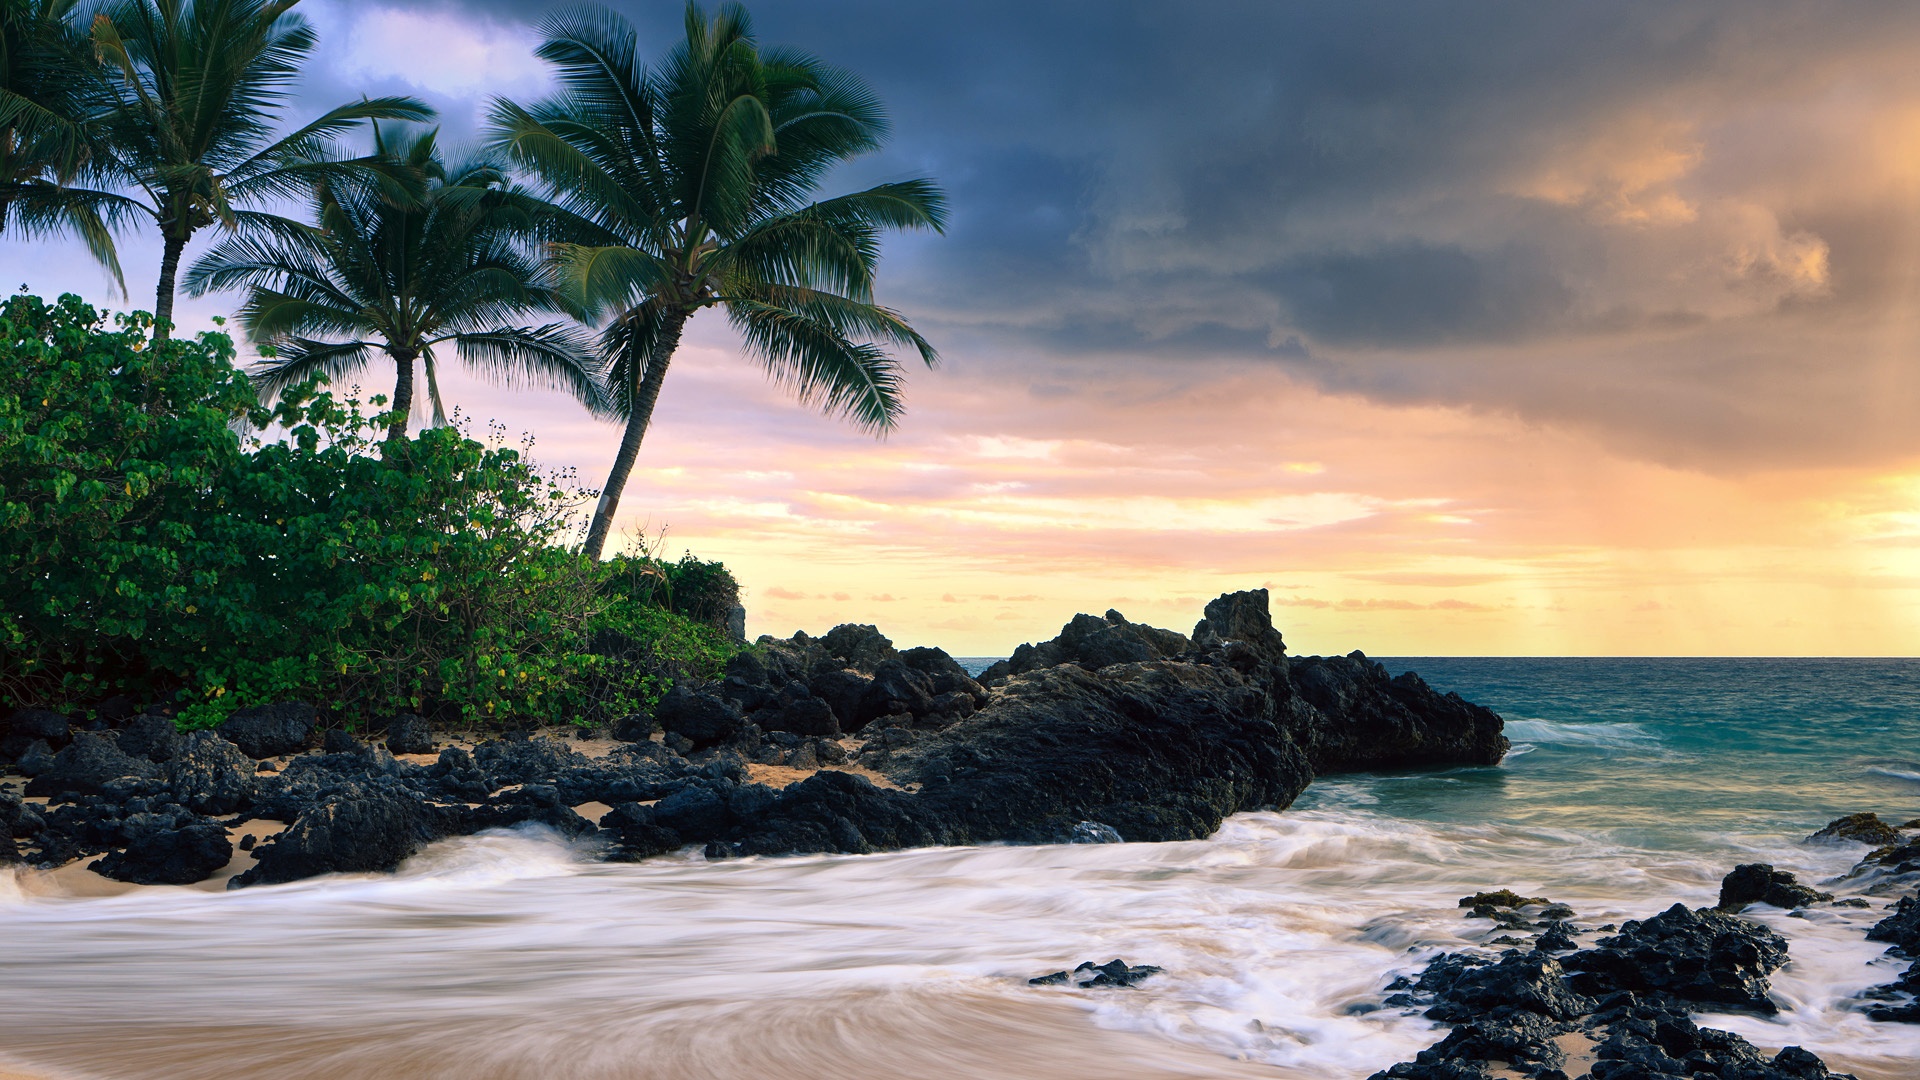 Скачать обои бесплатно Пляж, Тропики, Гавайи, Земля/природа картинка на рабочий стол ПК